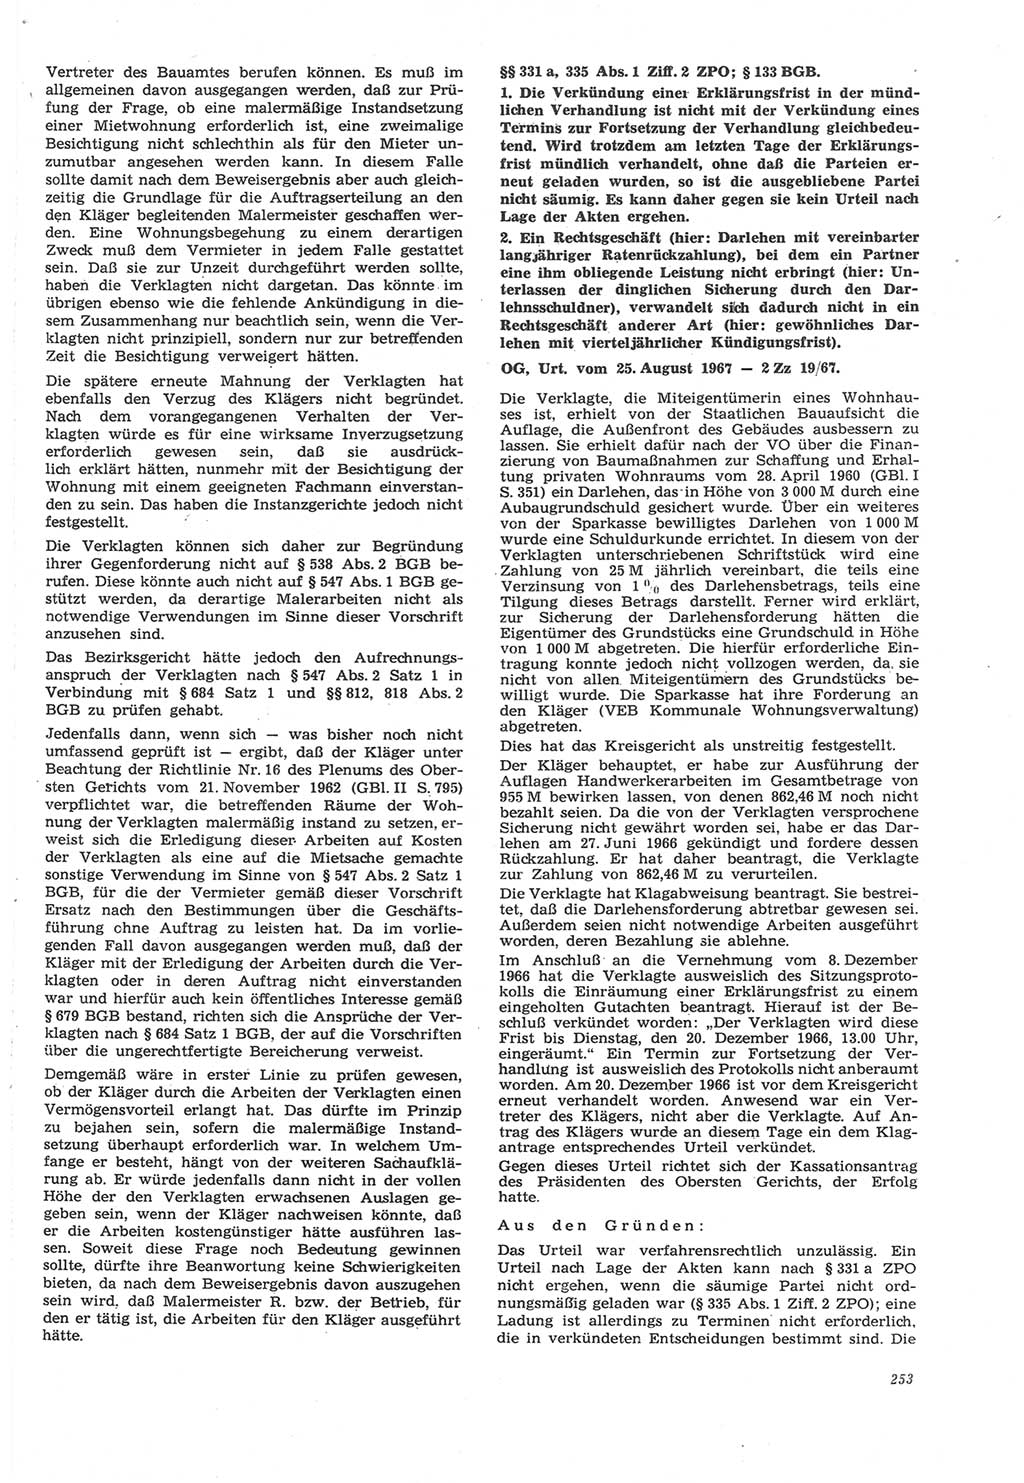 Neue Justiz (NJ), Zeitschrift für Recht und Rechtswissenschaft [Deutsche Demokratische Republik (DDR)], 22. Jahrgang 1968, Seite 253 (NJ DDR 1968, S. 253)